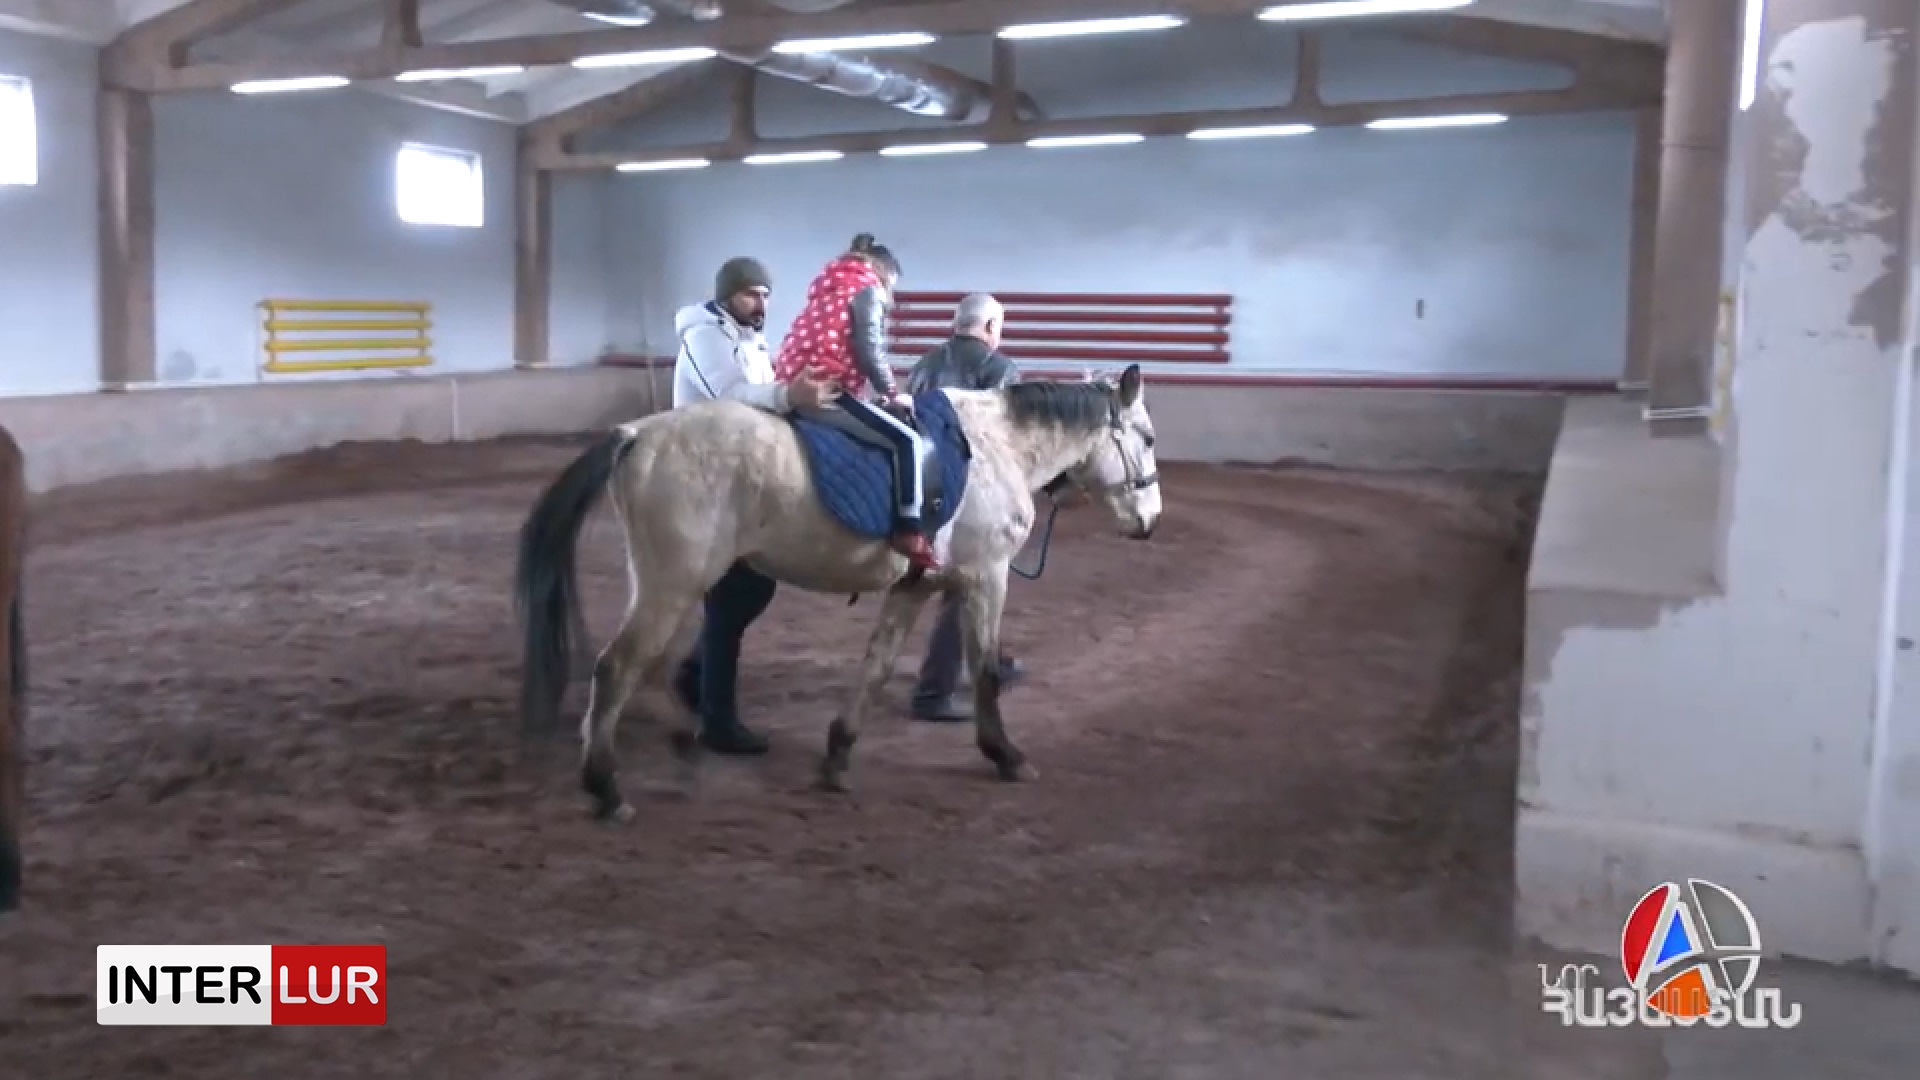 Երբ երեխաներին օգնության են հասնում ձիերը, կամ ձիաբուժություն. ֆիզիկական ու հոգեբանական բուժման համադրություն